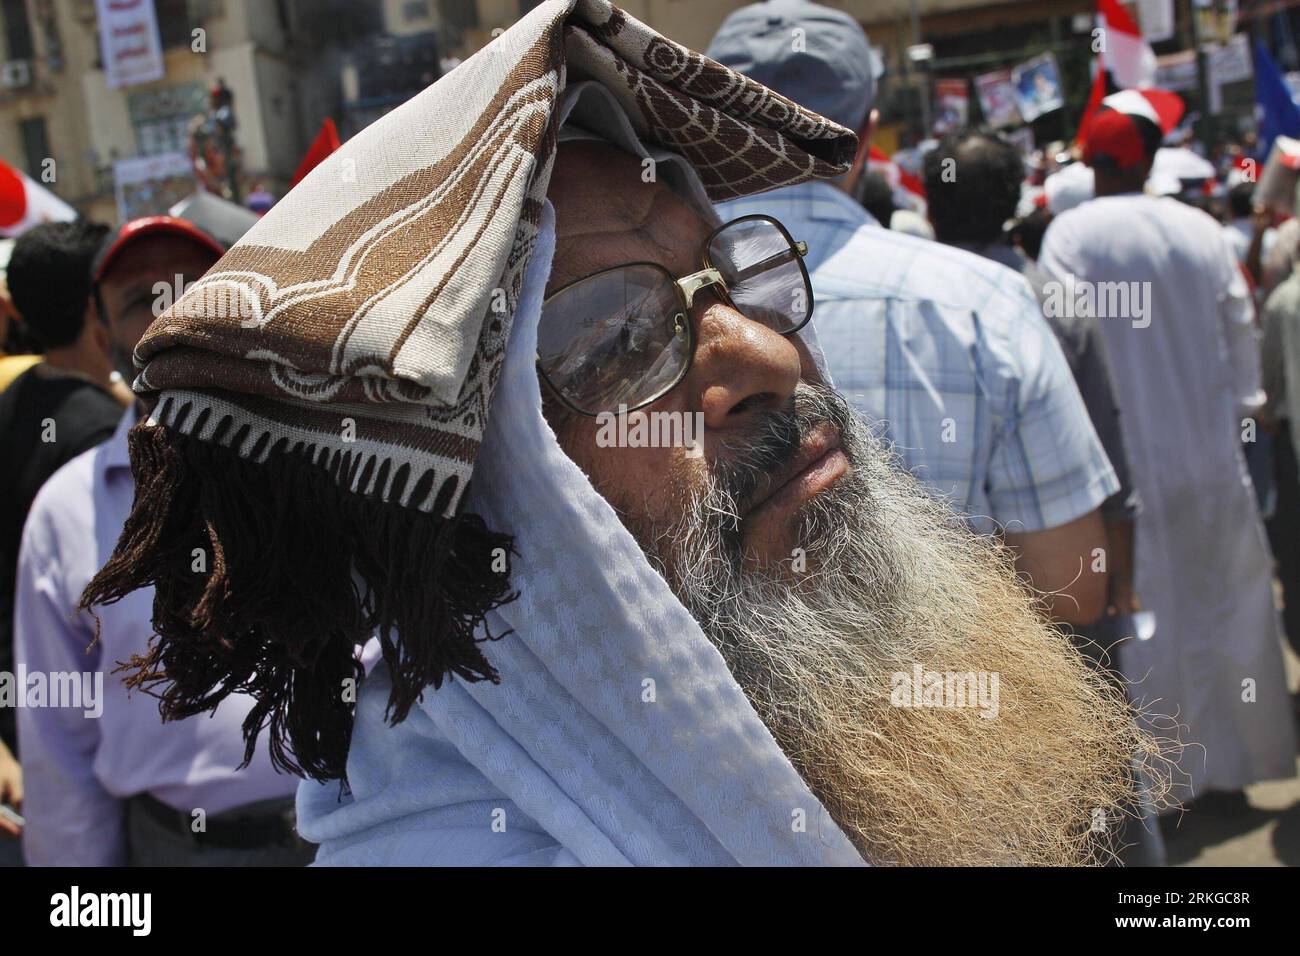 Bildnummer: 55579748 Datum: 08.07.2011 Copyright: imago/Xinhua (110708)-- CAIRO, 8 luglio 2011 (Xinhua) -- Un uomo partecipa a una protesta di massa tenutasi in Piazza Tahrir, il Cairo, Egitto, 8 luglio 2011. Migliaia di egiziani si rifugiarono nel centro di piazza Tahrir del Cairo in quello che chiamarono la Rivoluzione il primo venerdì, chiedendo ai militari al potere di soddisfare tutte le richieste della Rivoluzione del gennaio 25. Hanno anche chiesto di purificare e ristrutturare le istituzioni di polizia e di accelerare i processi a tutti gli ex funzionari del regime e agli agenti di polizia coinvolti nell'uccisione dei manifestanti e nella causa del caos. (Xinhua/Cai Yang) Foto Stock